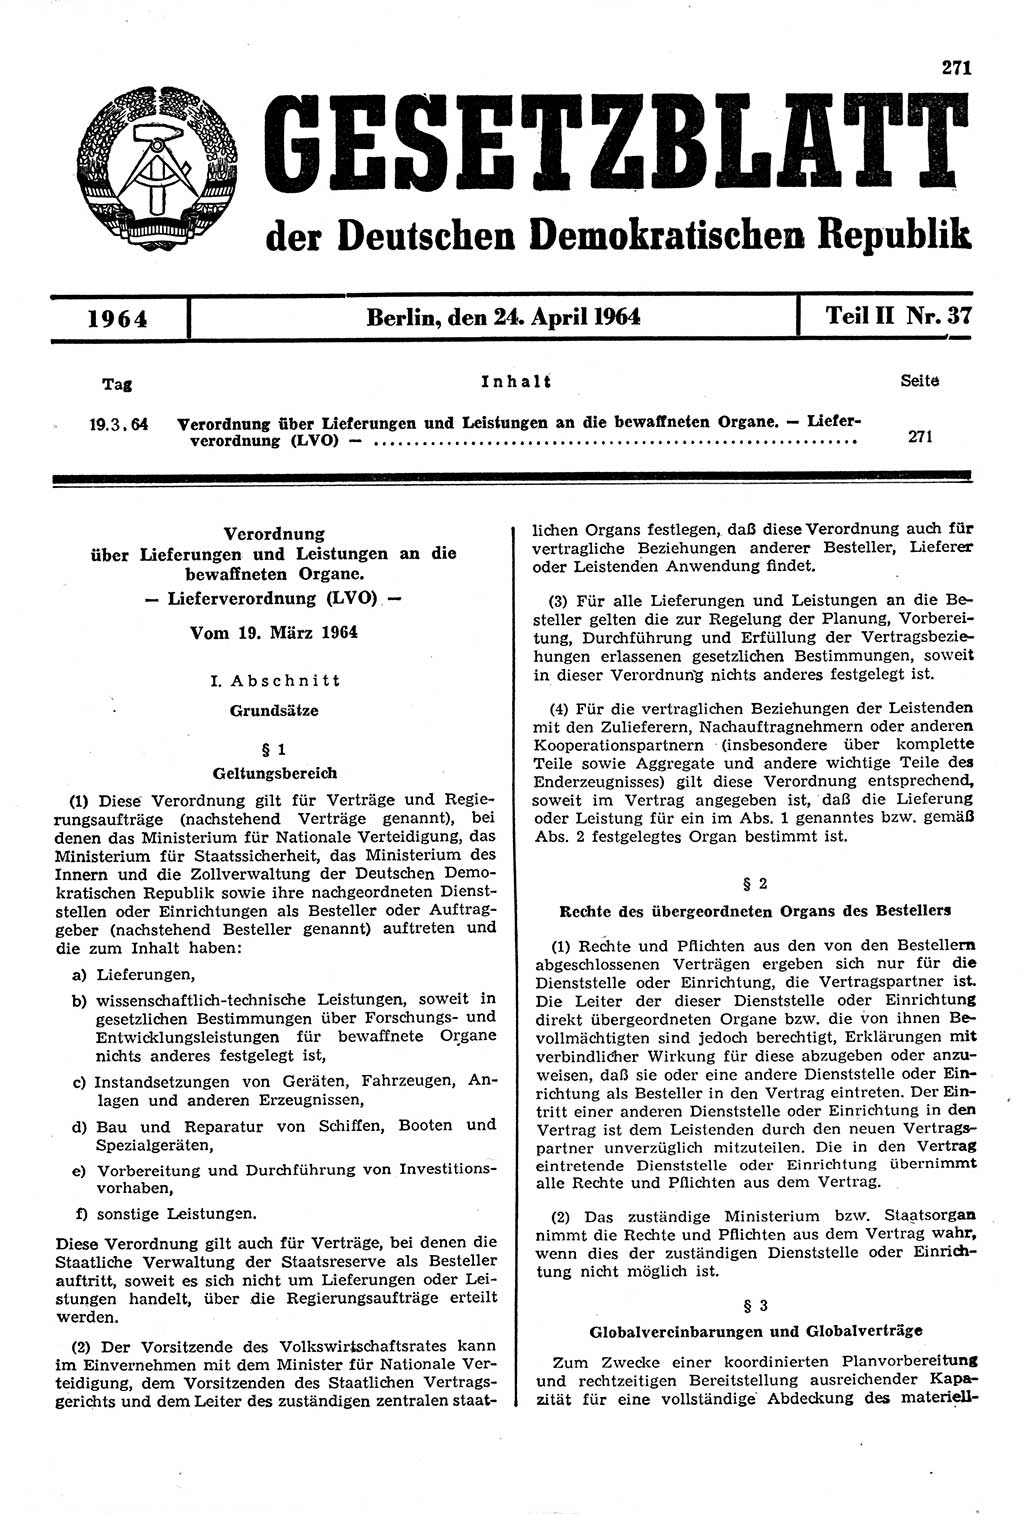 Gesetzblatt (GBl.) der Deutschen Demokratischen Republik (DDR) Teil ⅠⅠ 1964, Seite 271 (GBl. DDR ⅠⅠ 1964, S. 271)